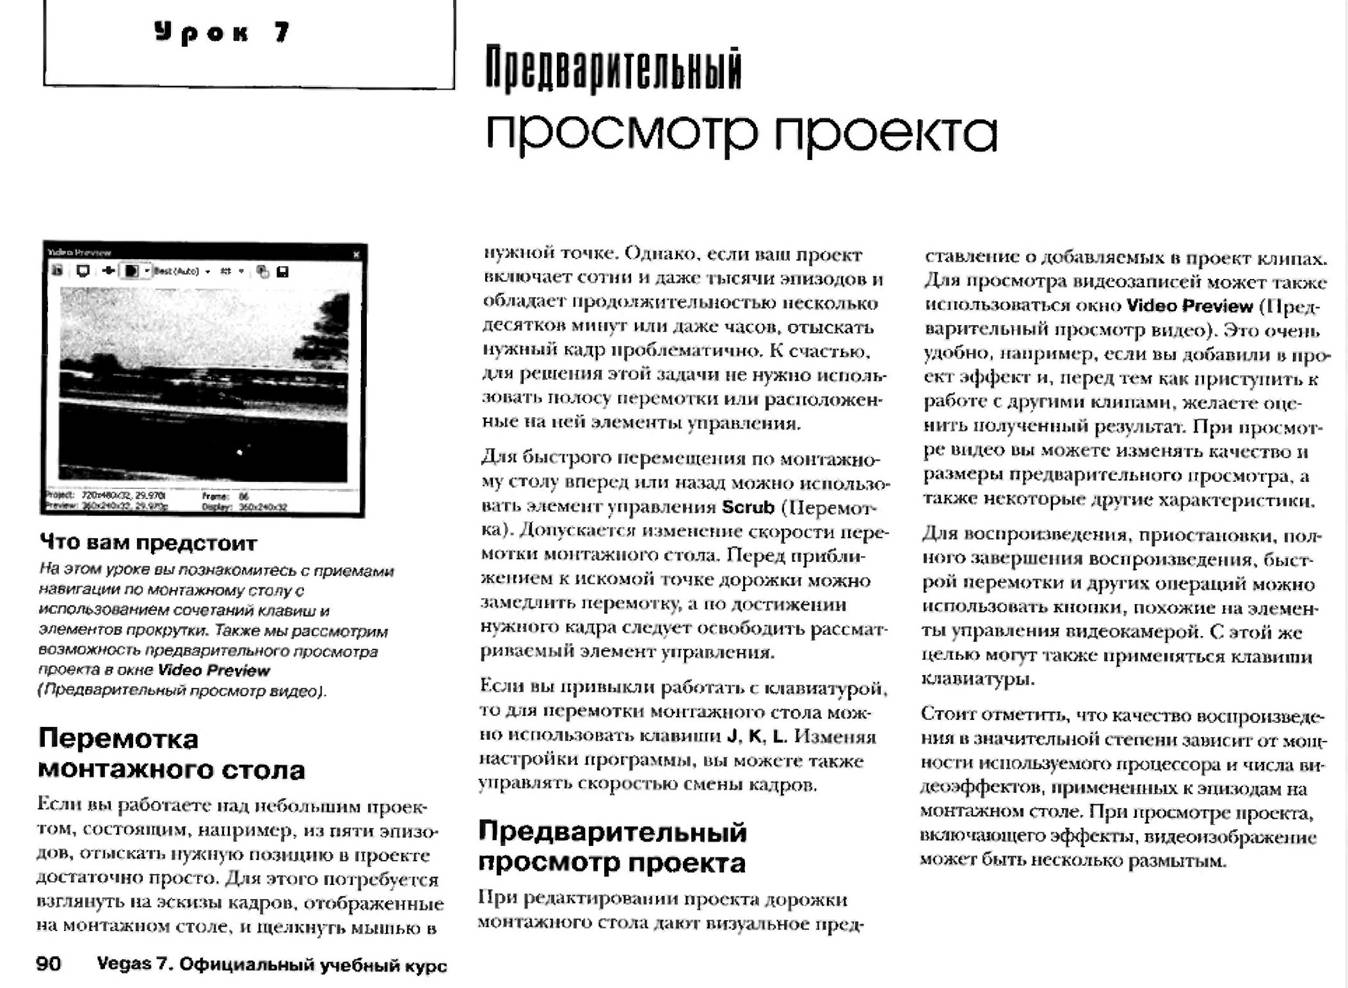 http://redaktori-uroki.3dn.ru/_ph/12/884417518.jpg